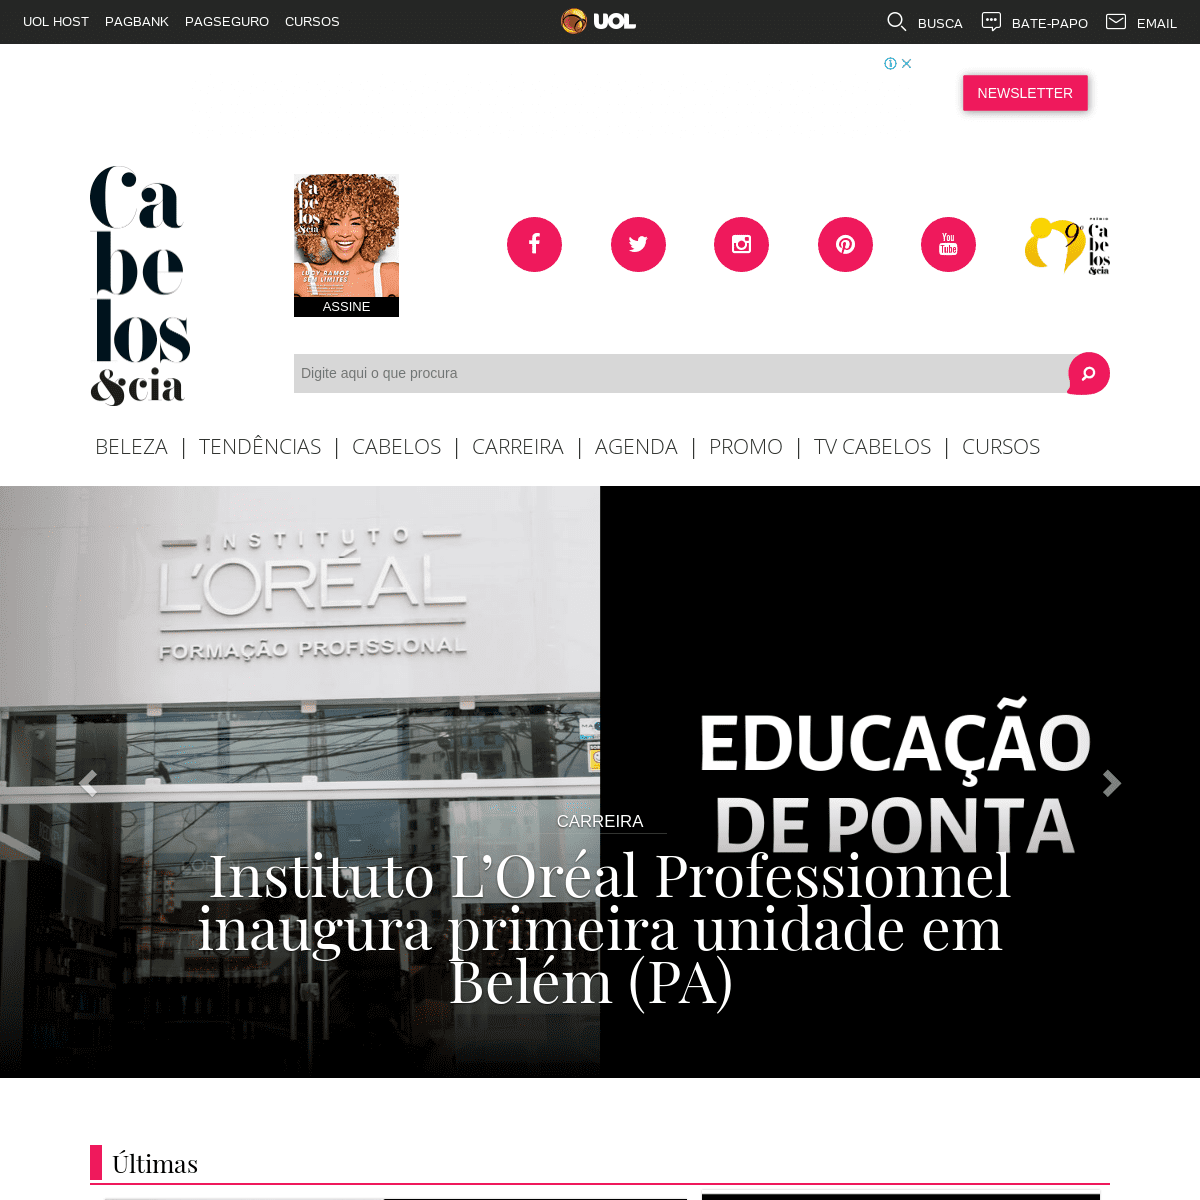 A complete backup of revistacabelos.uol.com.br